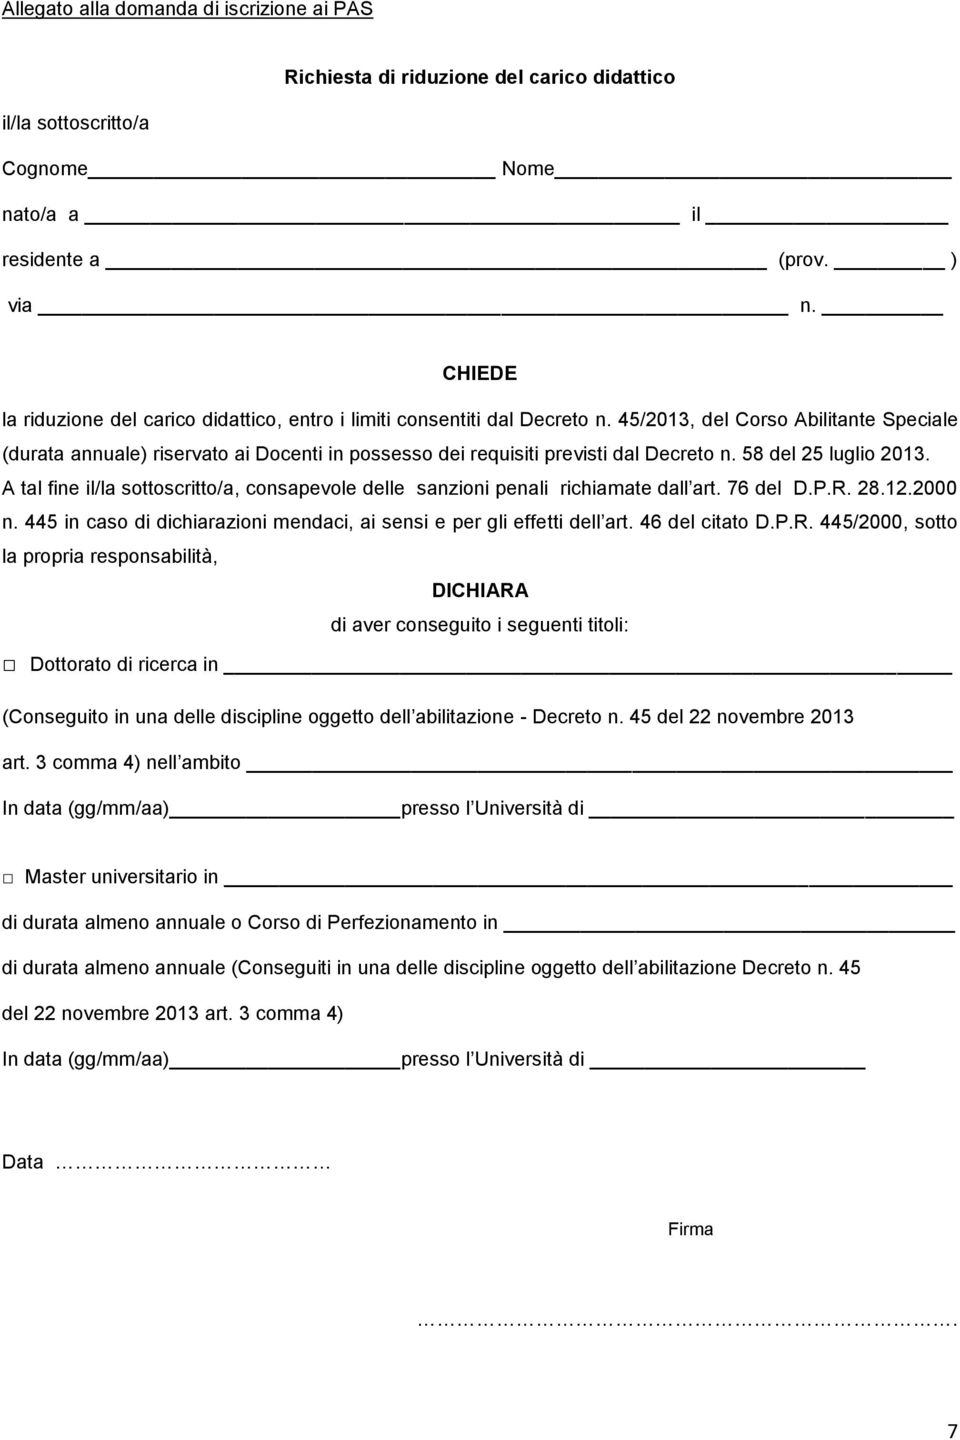 45/2013, del Corso Abilitante Speciale (durata annuale) riservato ai Docenti in possesso dei requisiti previsti dal Decreto n. 58 del 25 luglio 2013.